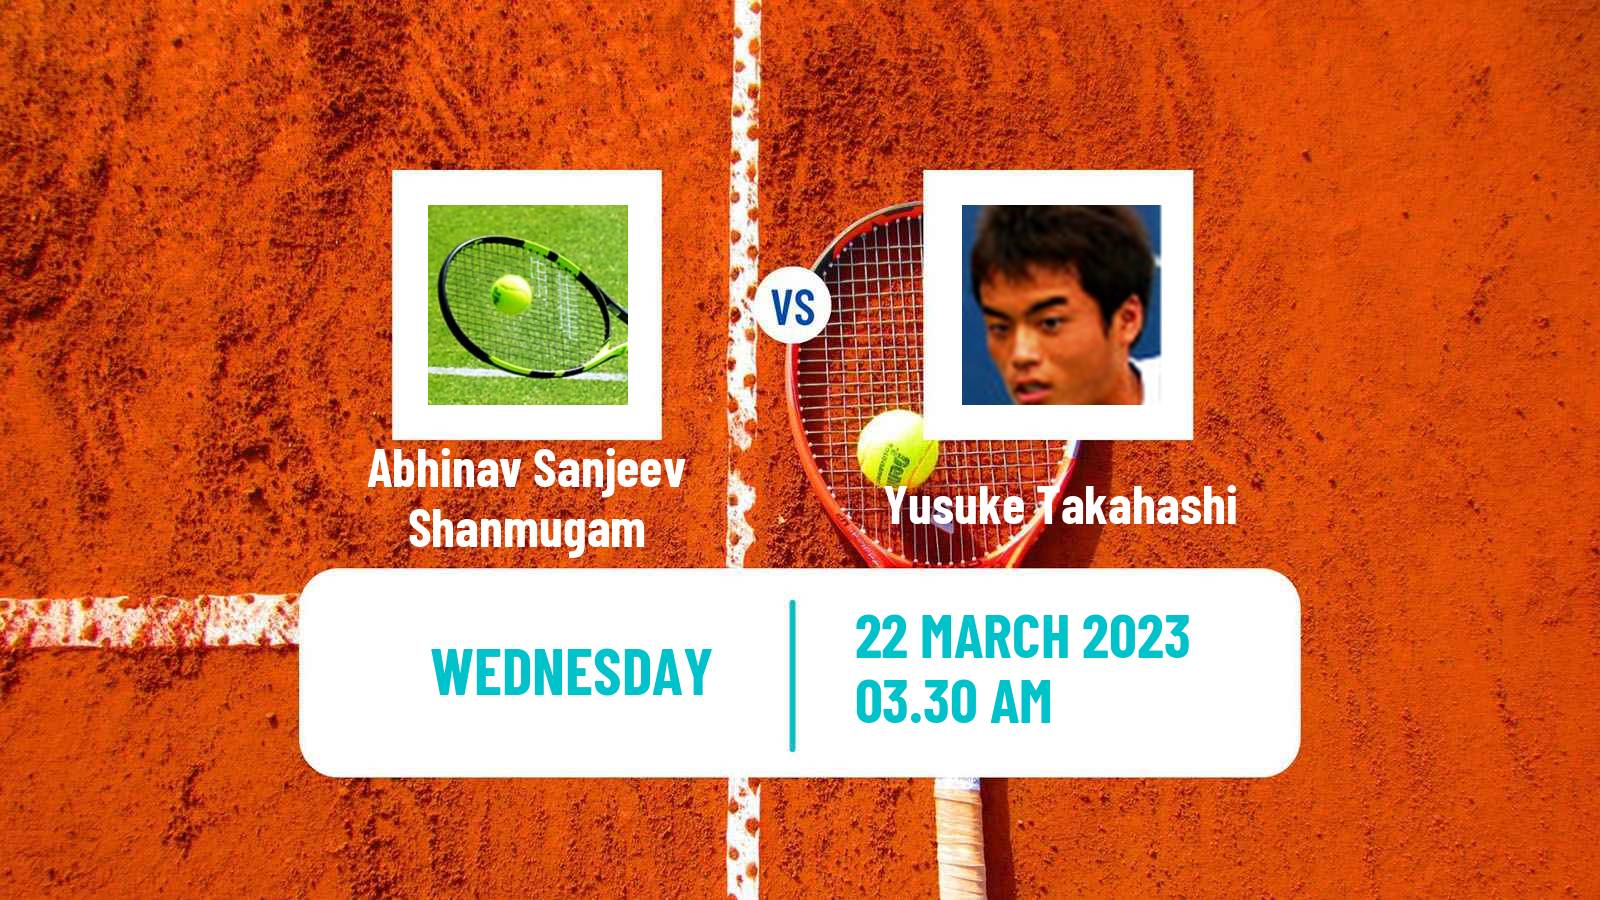 Tennis ITF Tournaments Abhinav Sanjeev Shanmugam - Yusuke Takahashi